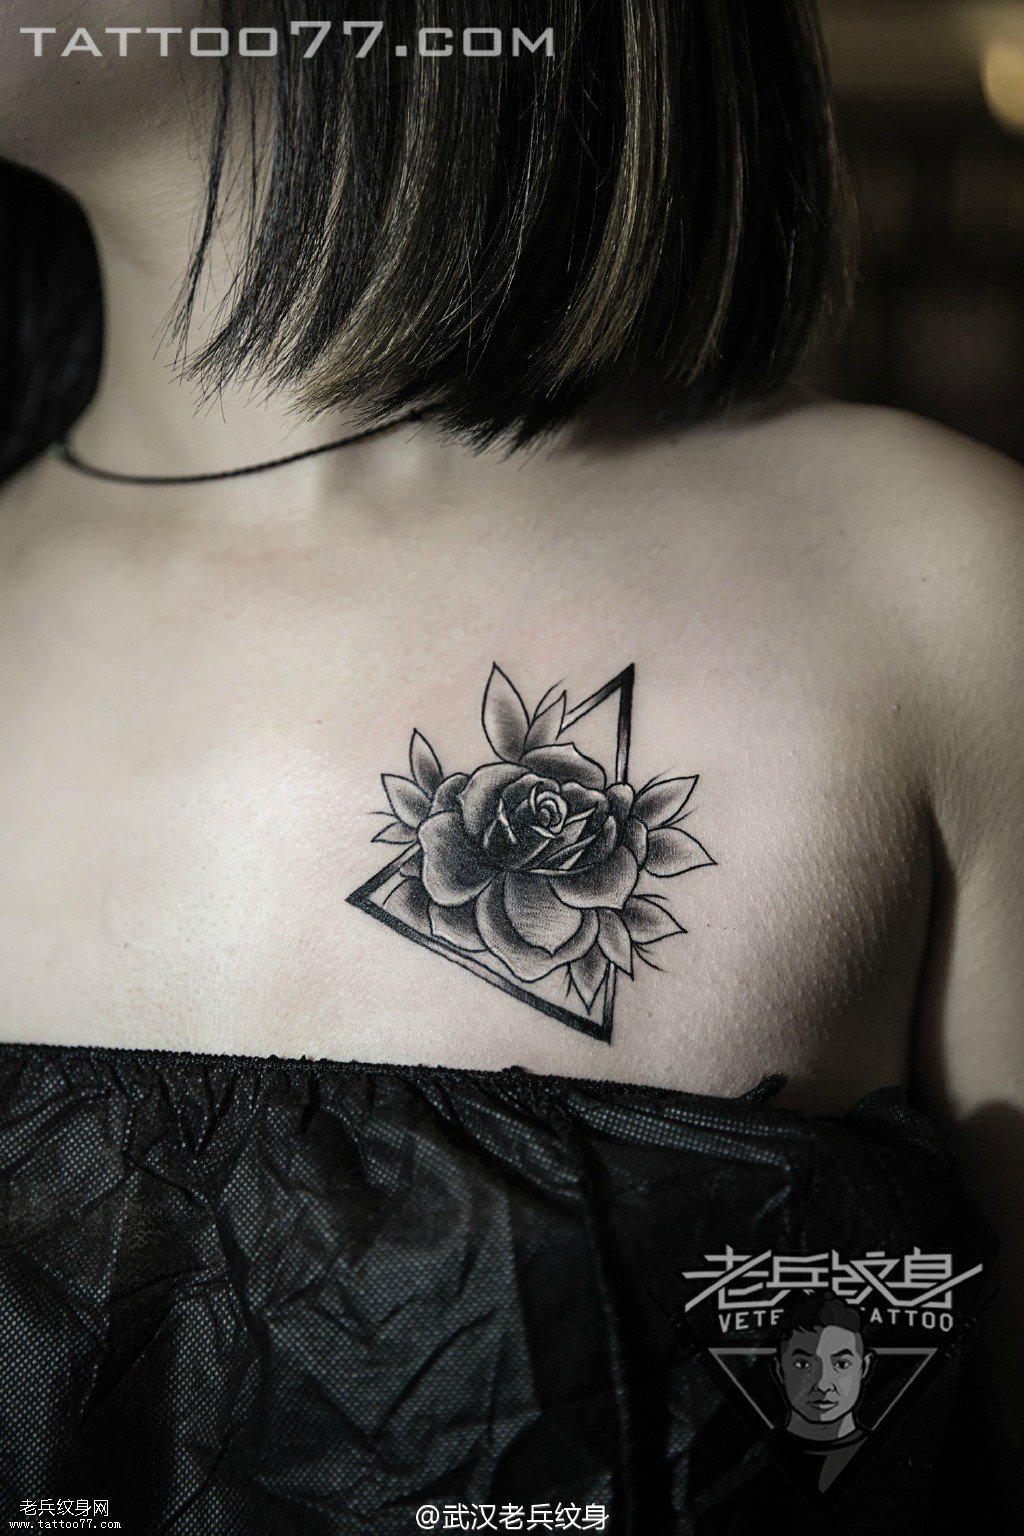 妹子胸部三角玫瑰花纹身图案作品遮盖旧纹身